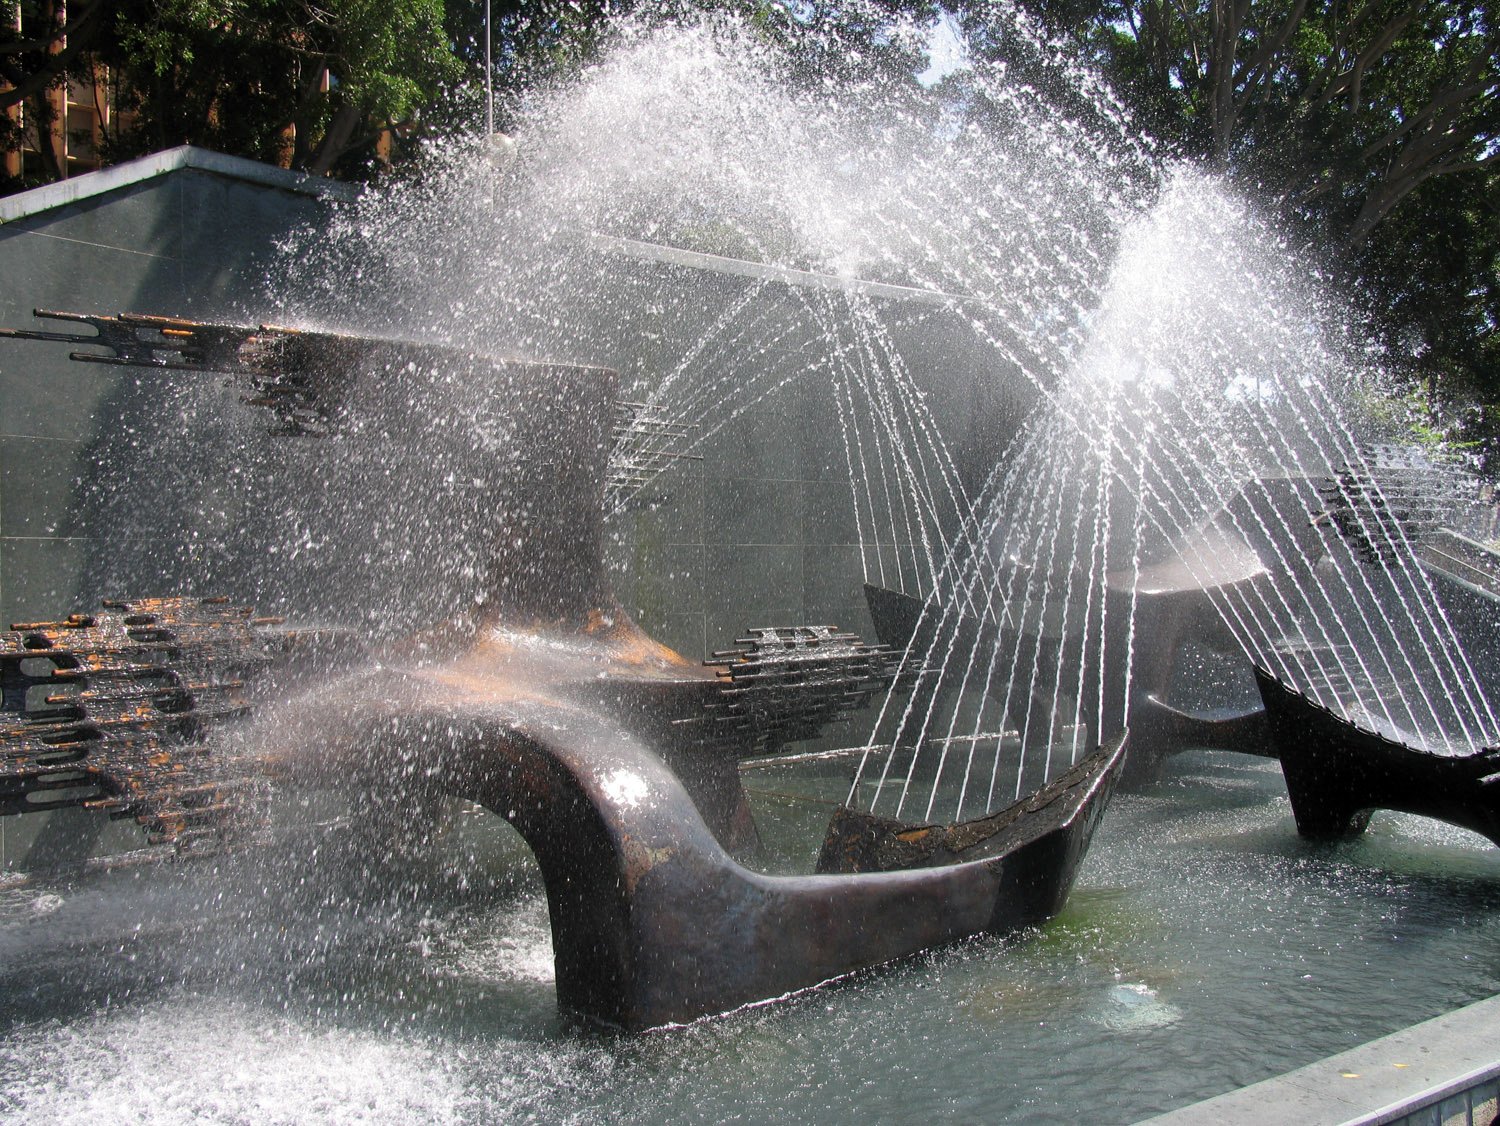 Captain James Cook Memorial Fountain